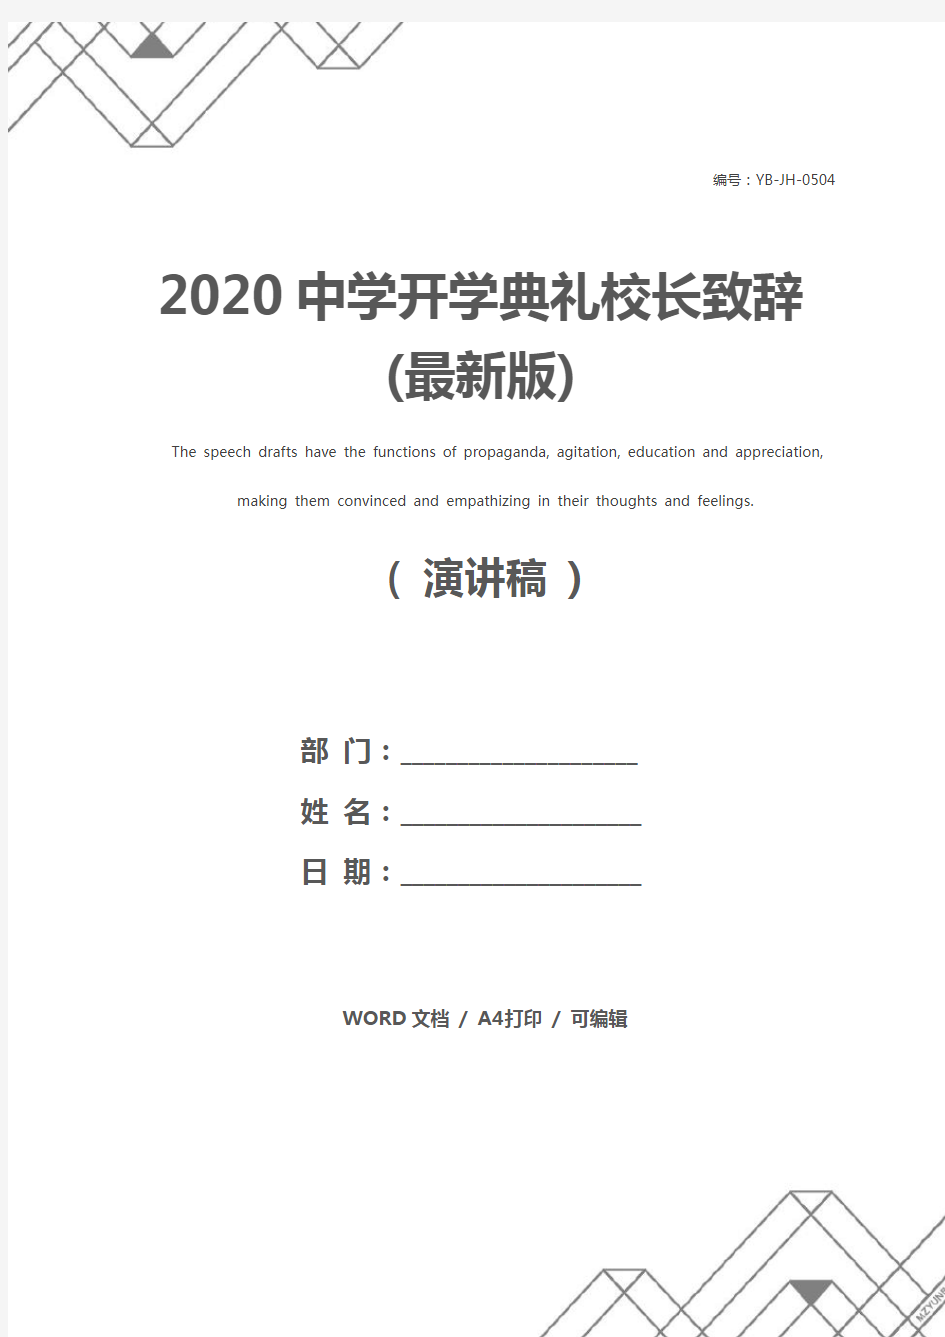 2020中学开学典礼校长致辞(最新版)